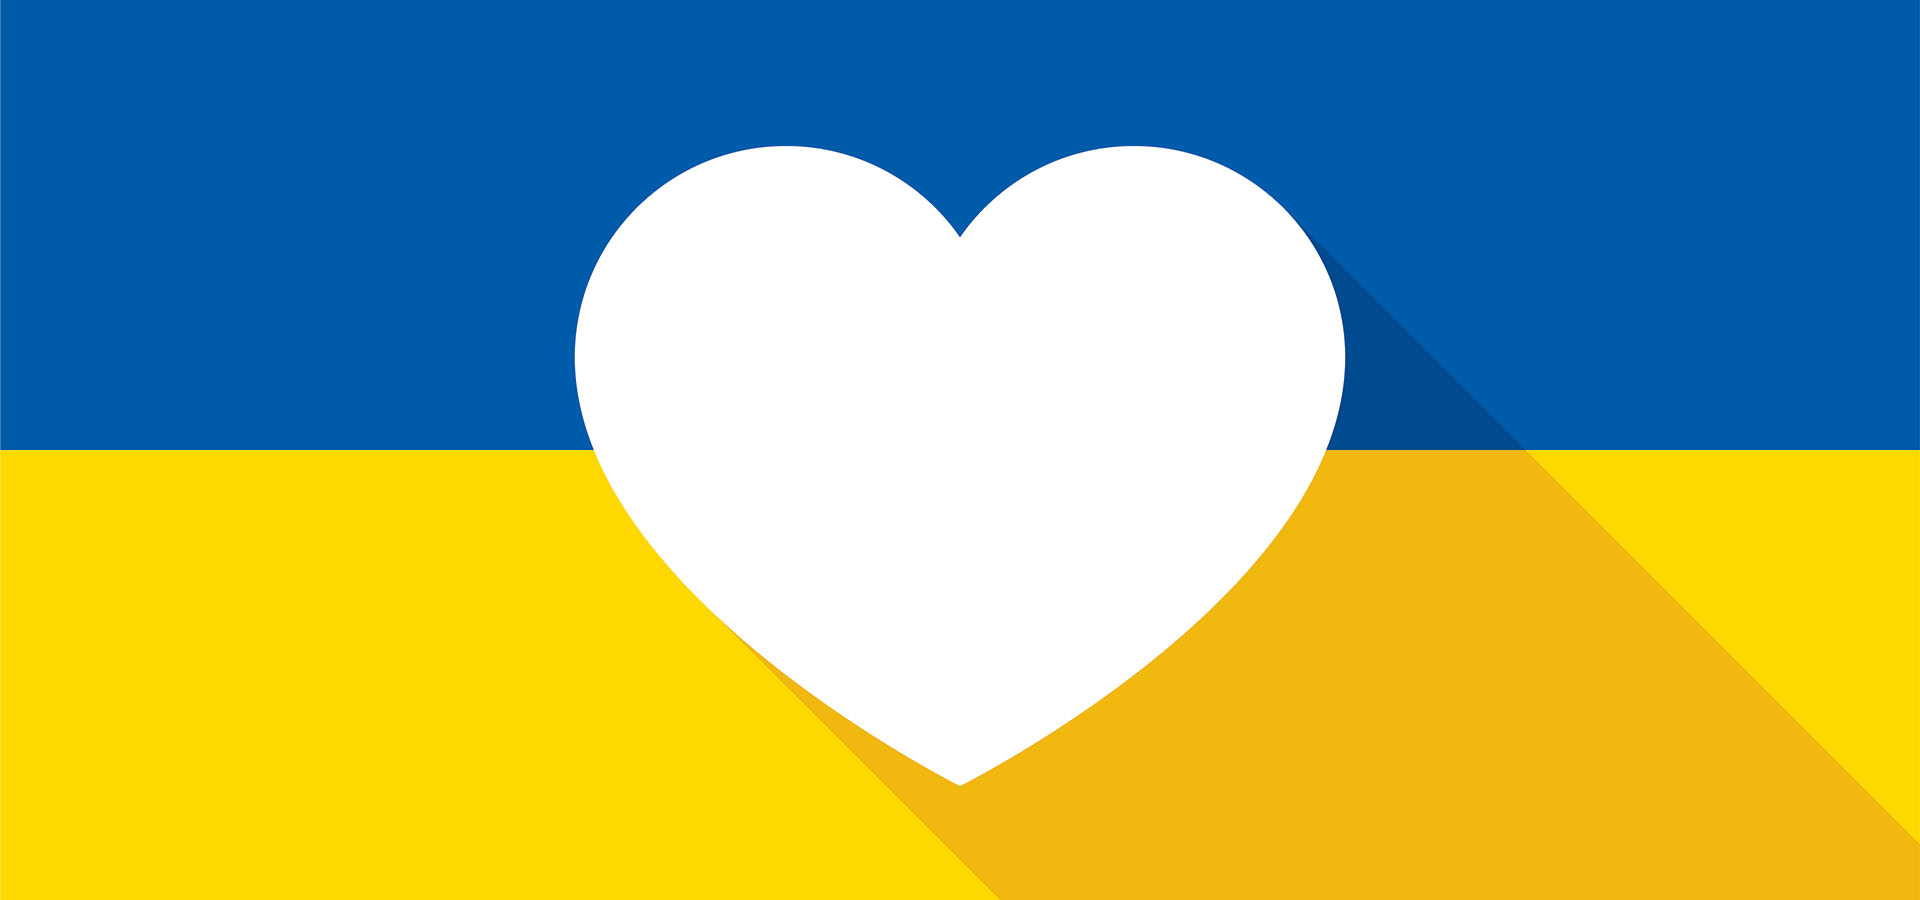 ukraine relief efforts